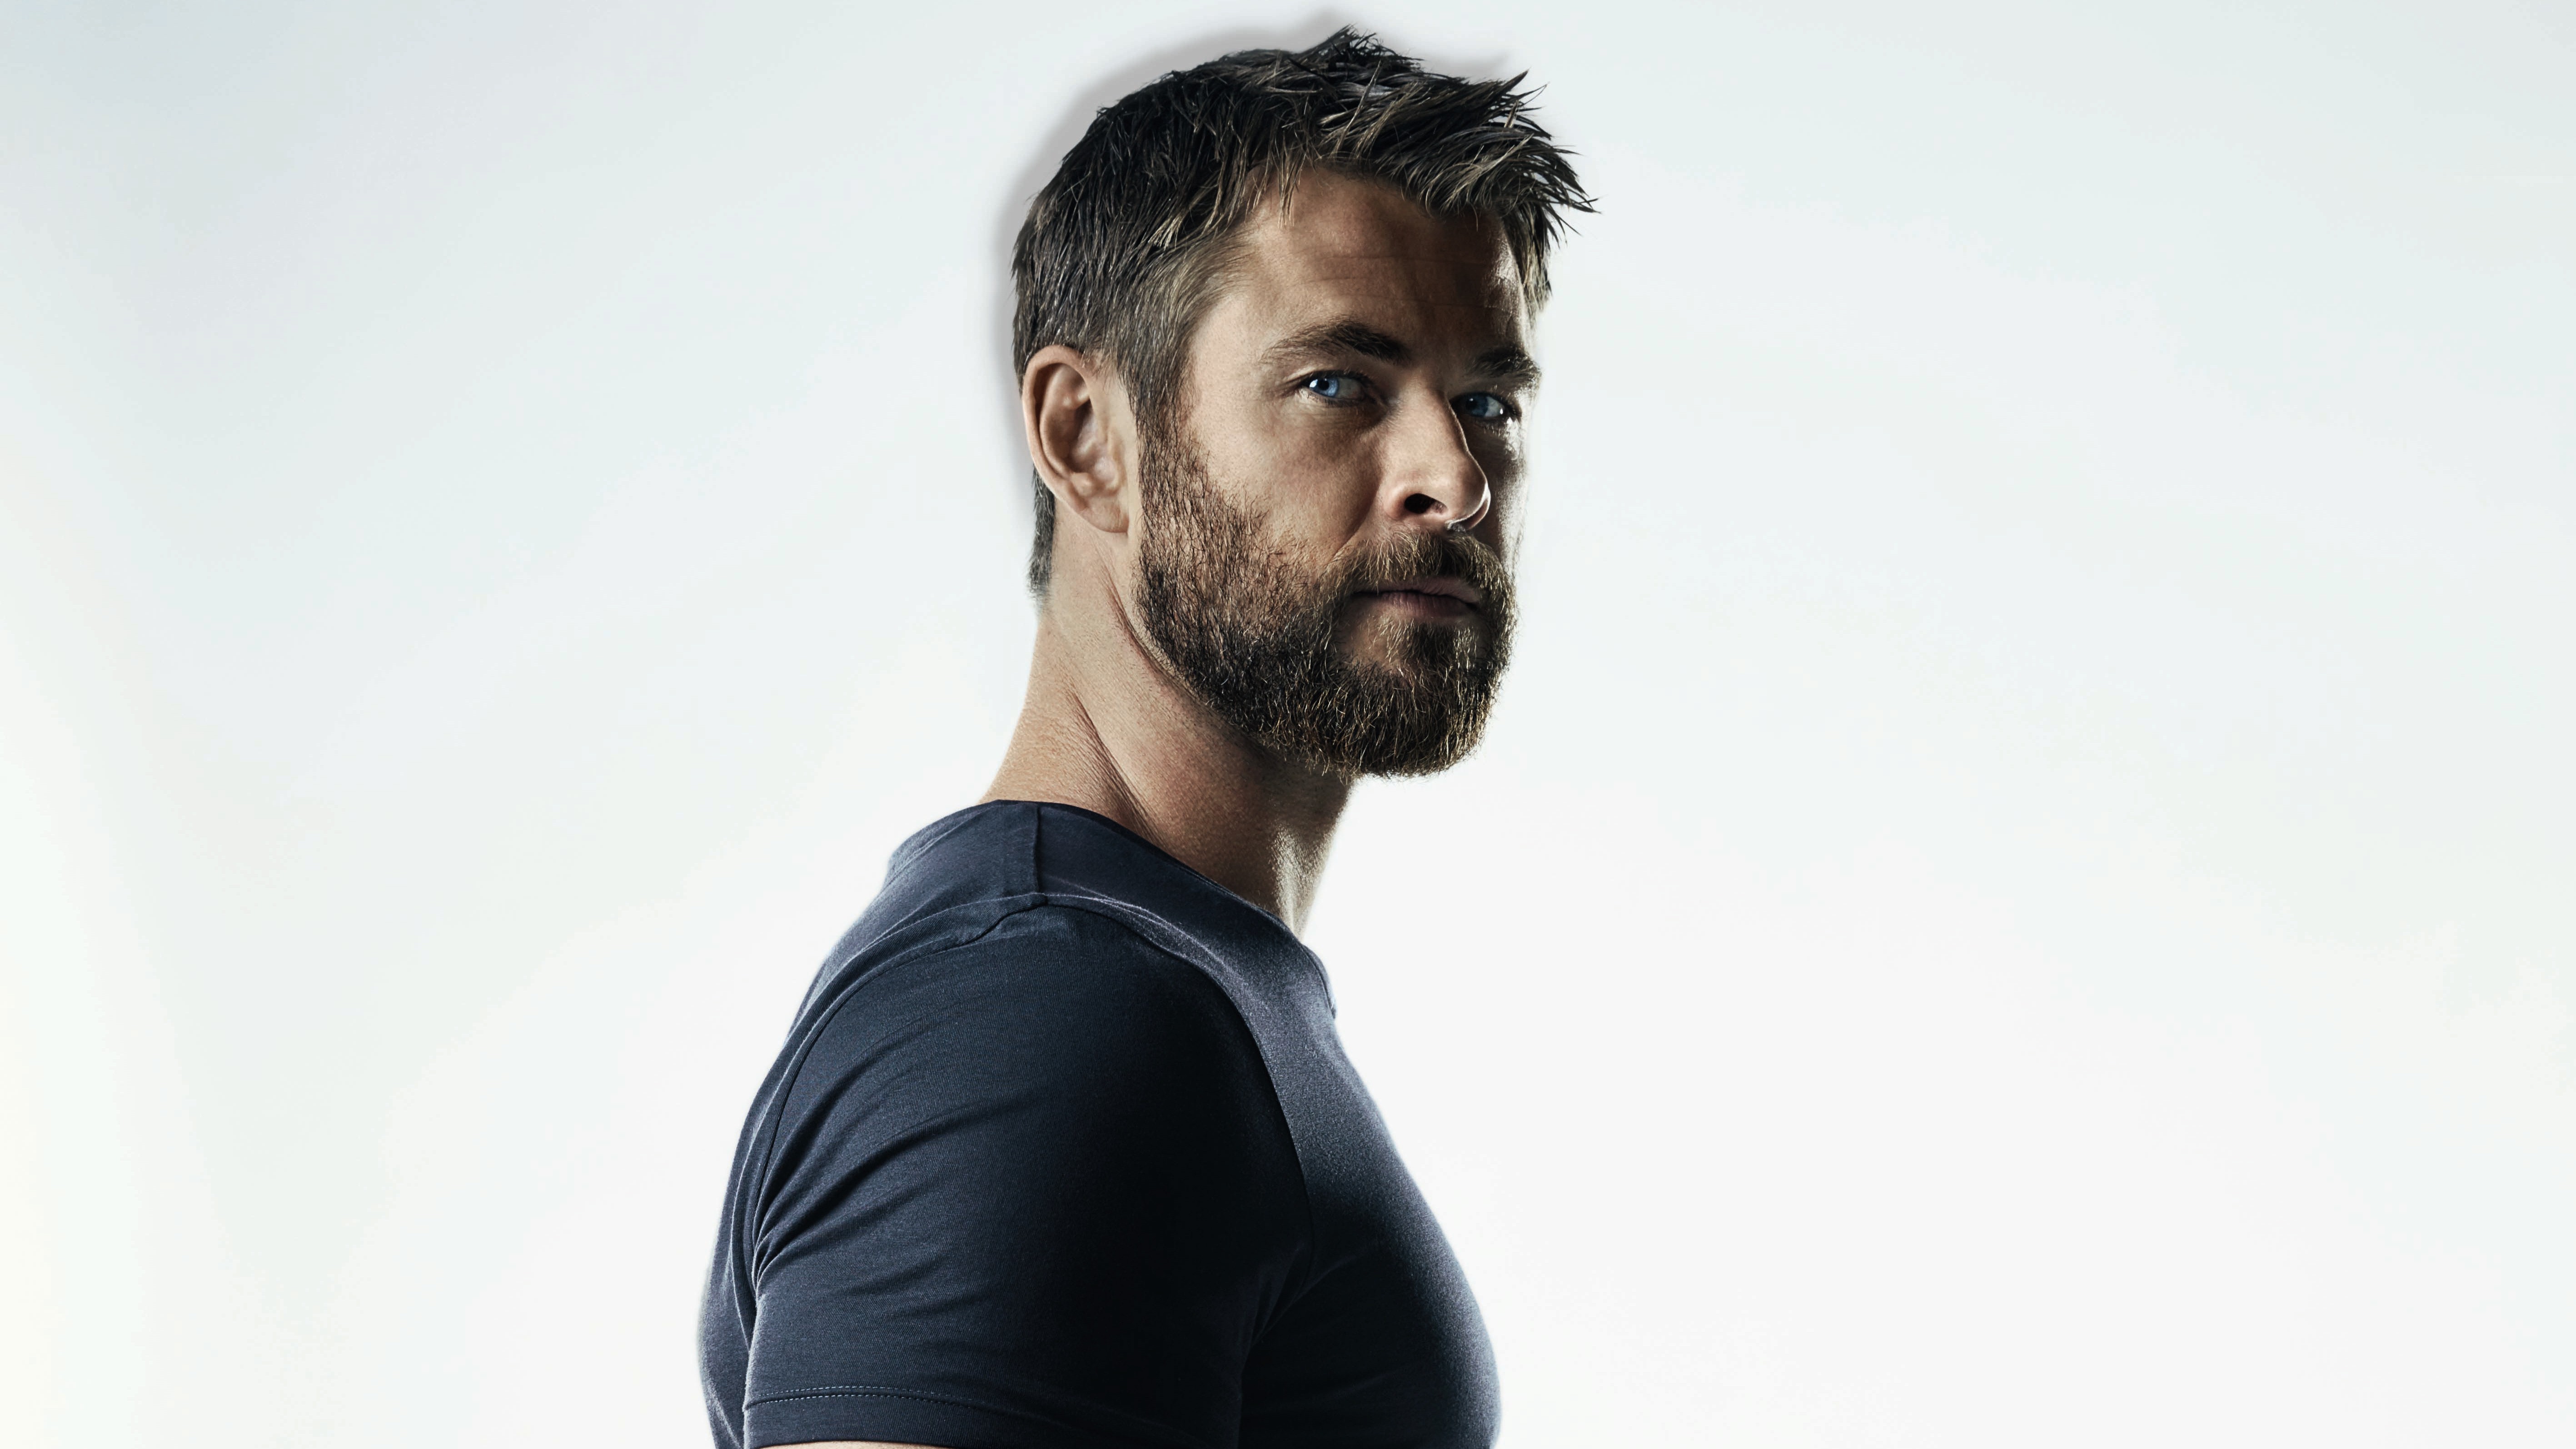 Handsome Actor Chris Hemsworth 5K Wallpaper